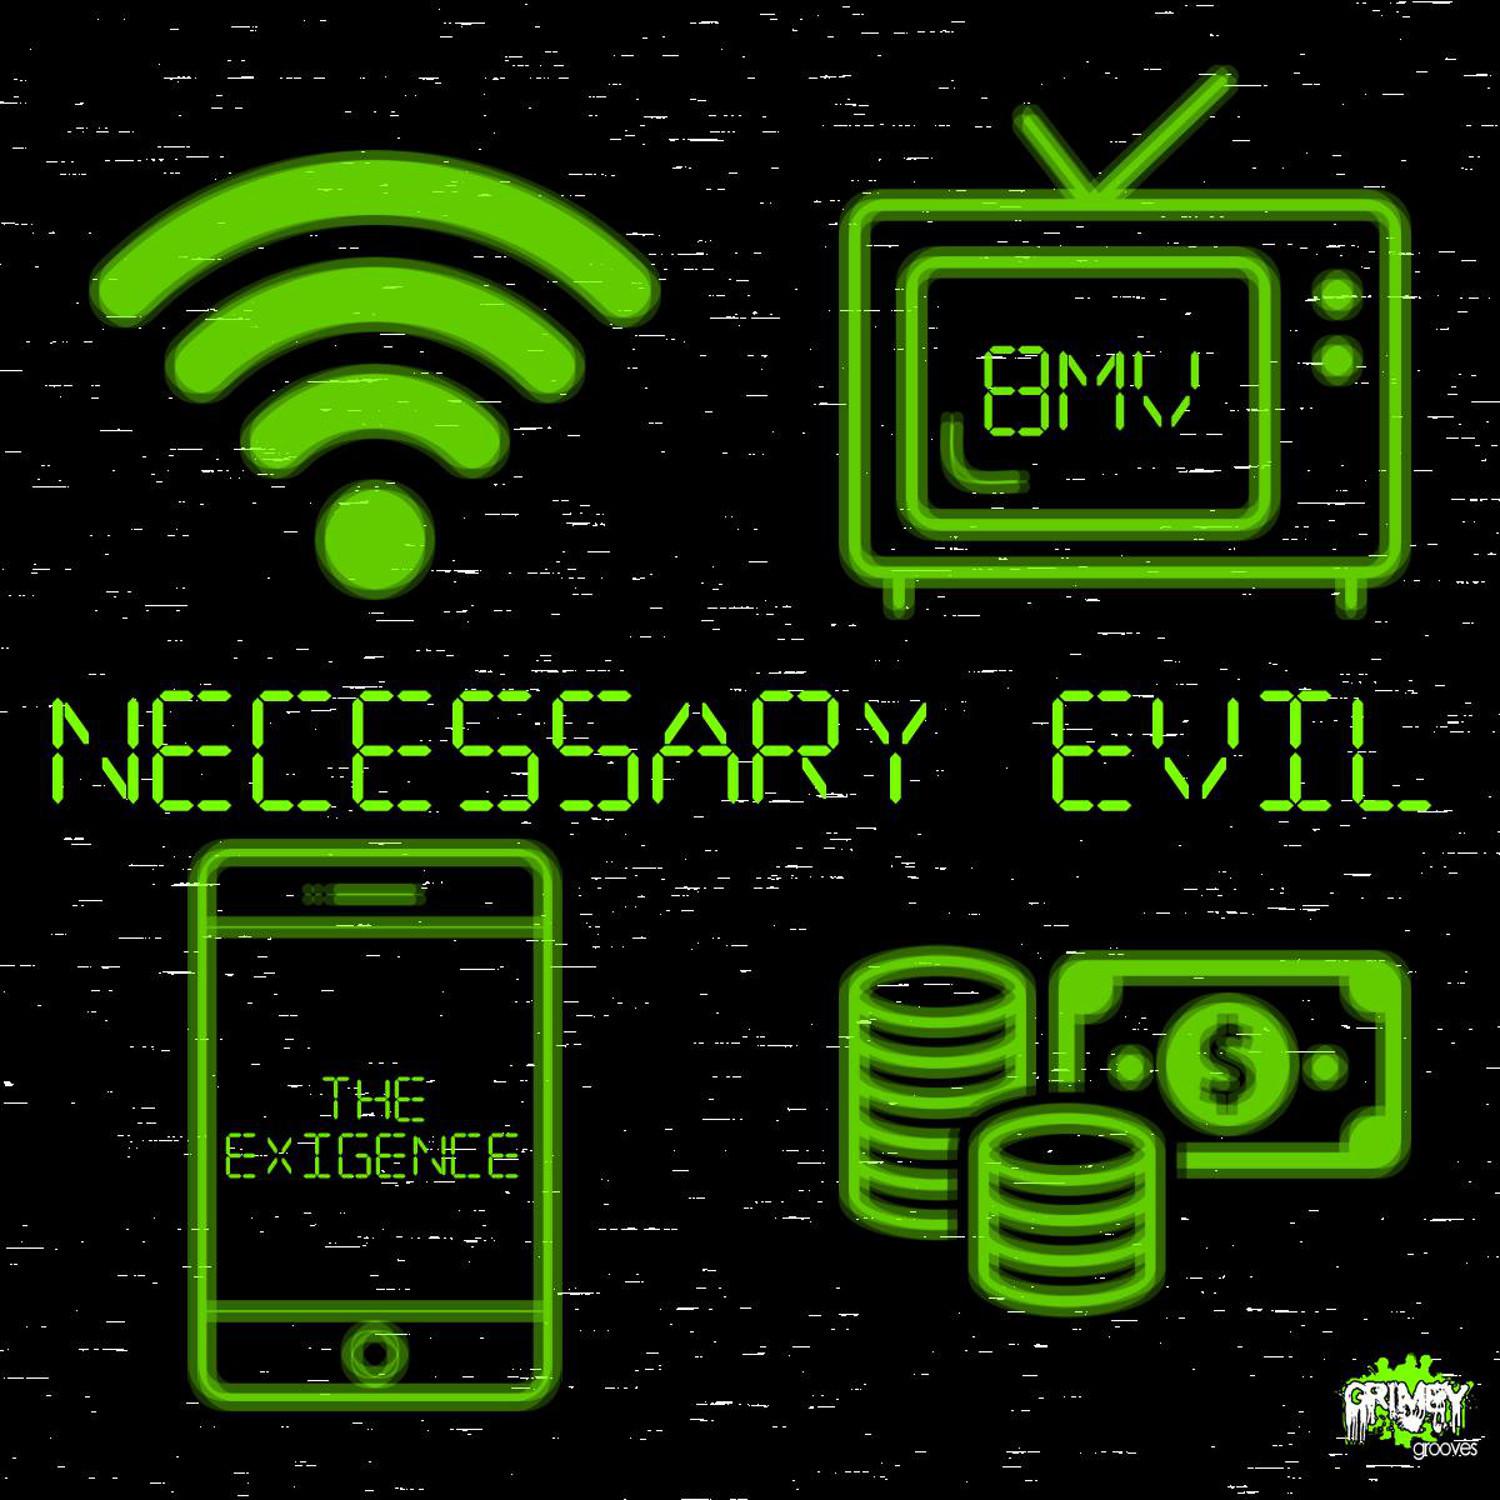 Necessary Evil